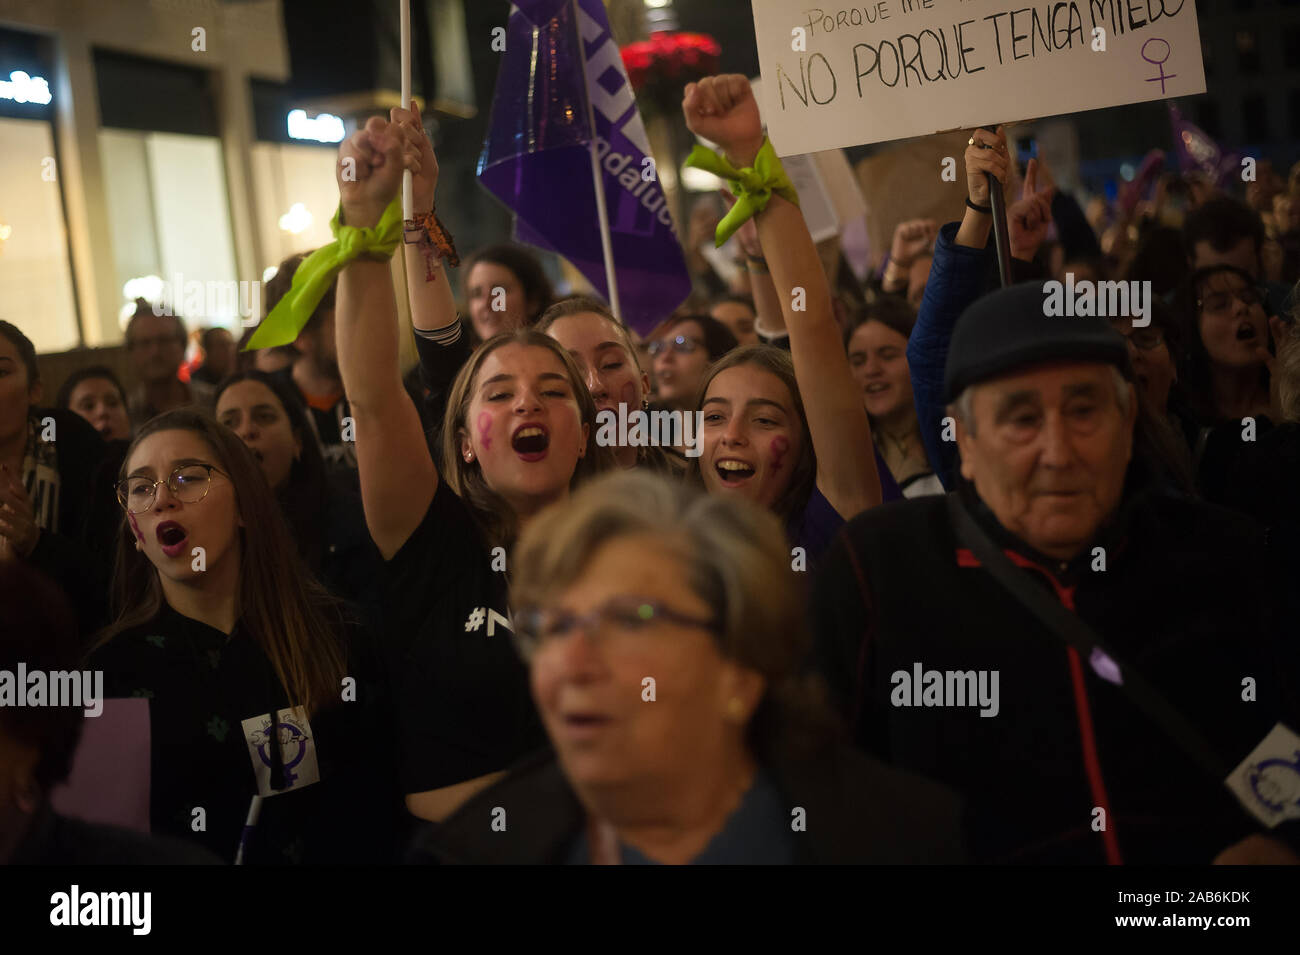 Malaga, Spagna. 25 Nov, 2019. I manifestanti cantano slogan durante una dimostrazione della Giornata Internazionale per lâ eliminazione della violenza contro le donne.Migliaia di persone hanno preso le strade per denunciare il feminicides e la violenza contro le donne in tutto il mondo una manifestazione denominata dalle femministe nei movimenti. Credito: SOPA Immagini limitata/Alamy Live News Foto Stock